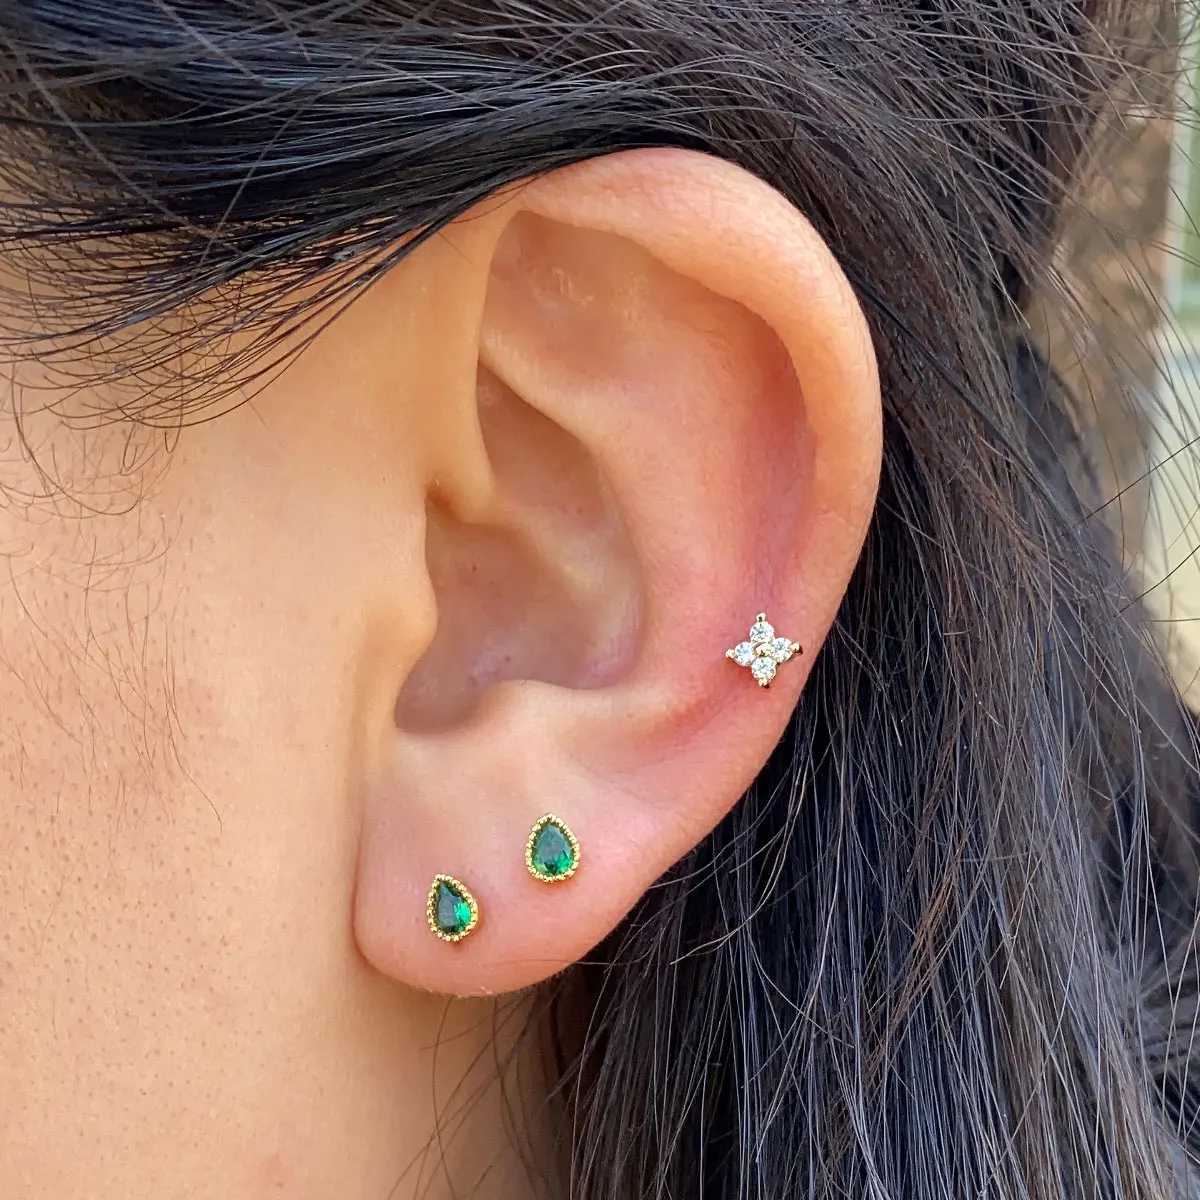 Chandelier en pendaison mignon boucles d'oreilles minimalistes à tampons à eau rouge verts à vis de cristal rouge